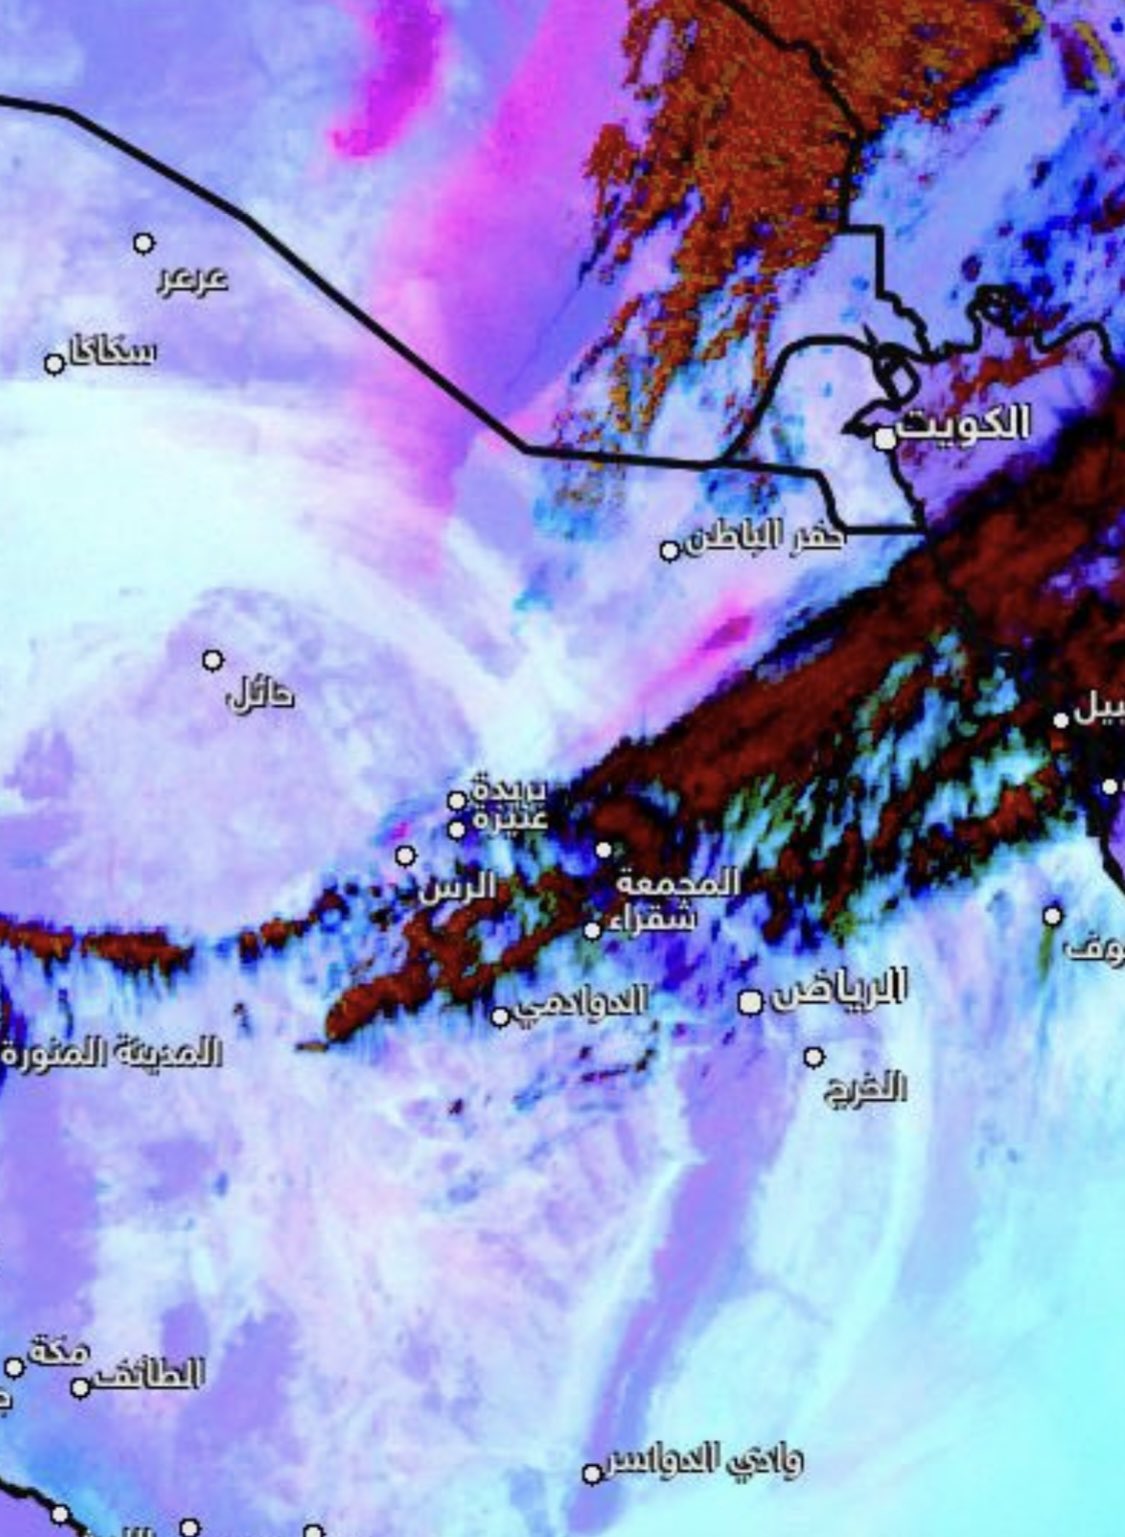 الحصيني: موجة غبار تزحف نحو محافظات شمال الرياض والشرقية